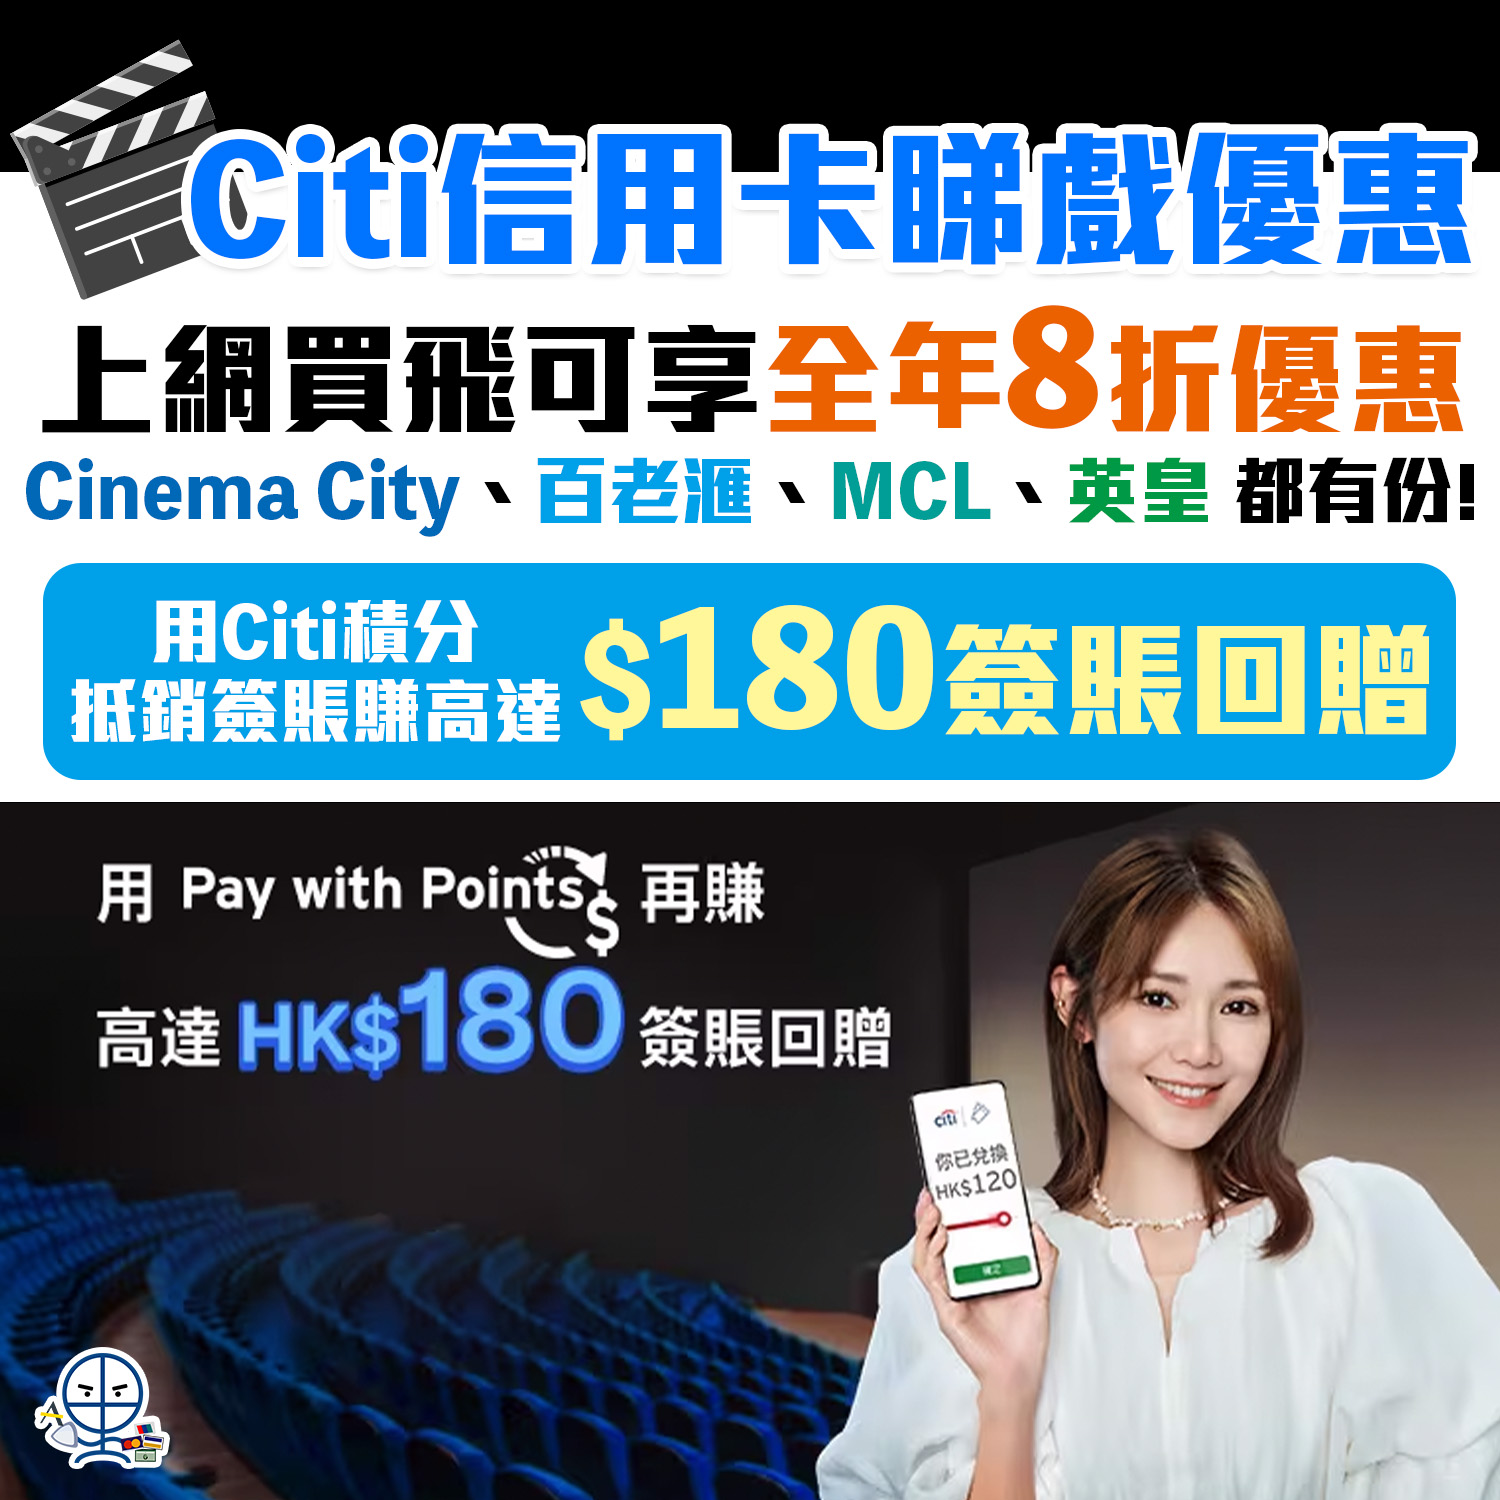 【Citi信用卡戲院優惠】於 Cinema City / 百老滙 / MCL / 英皇 睇戲低至8折！用Citi積分抵銷簽賬，賺高達HK$180簽賬回贈！